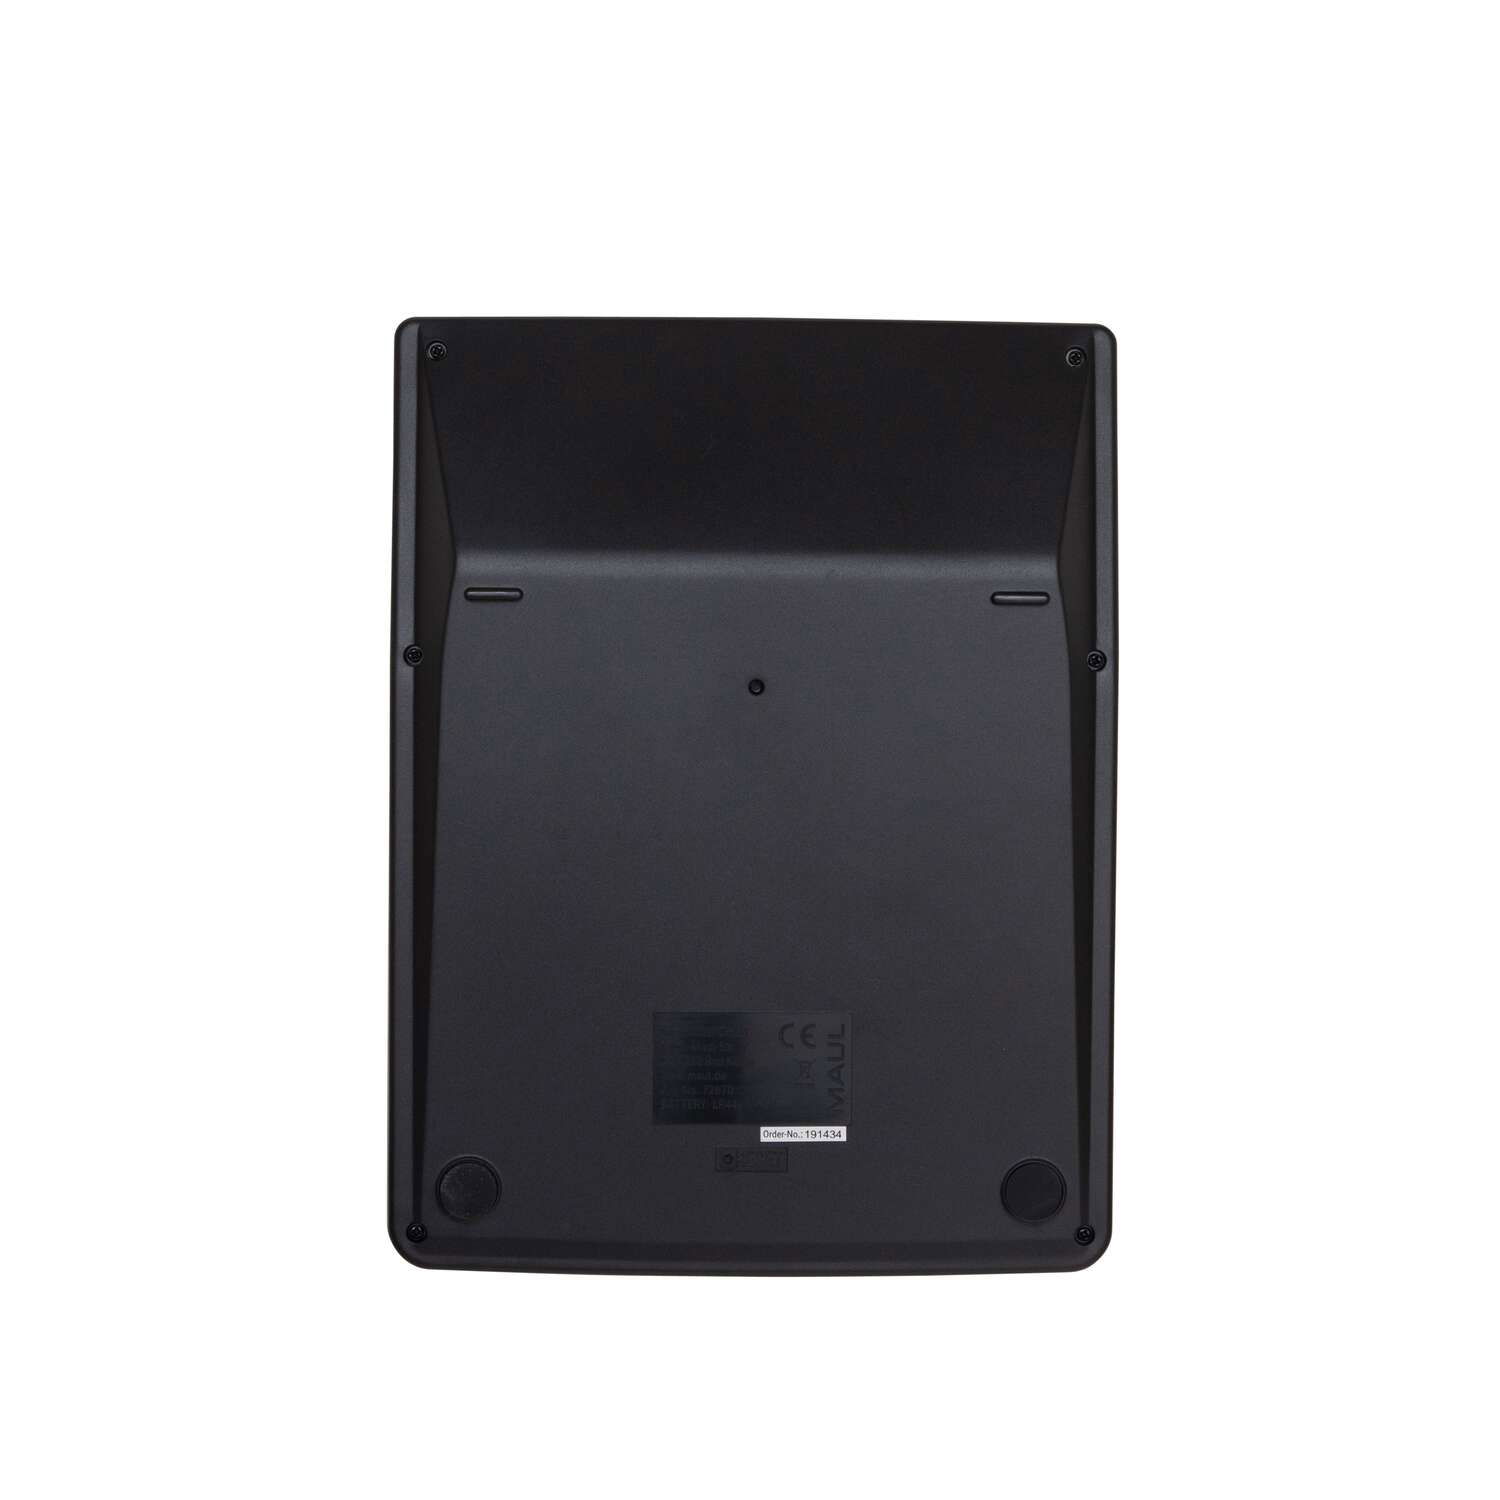 MAUL Tischrechner MXL 16 Solar Batterie 1-zeilig, 16 Ziffern schwarz